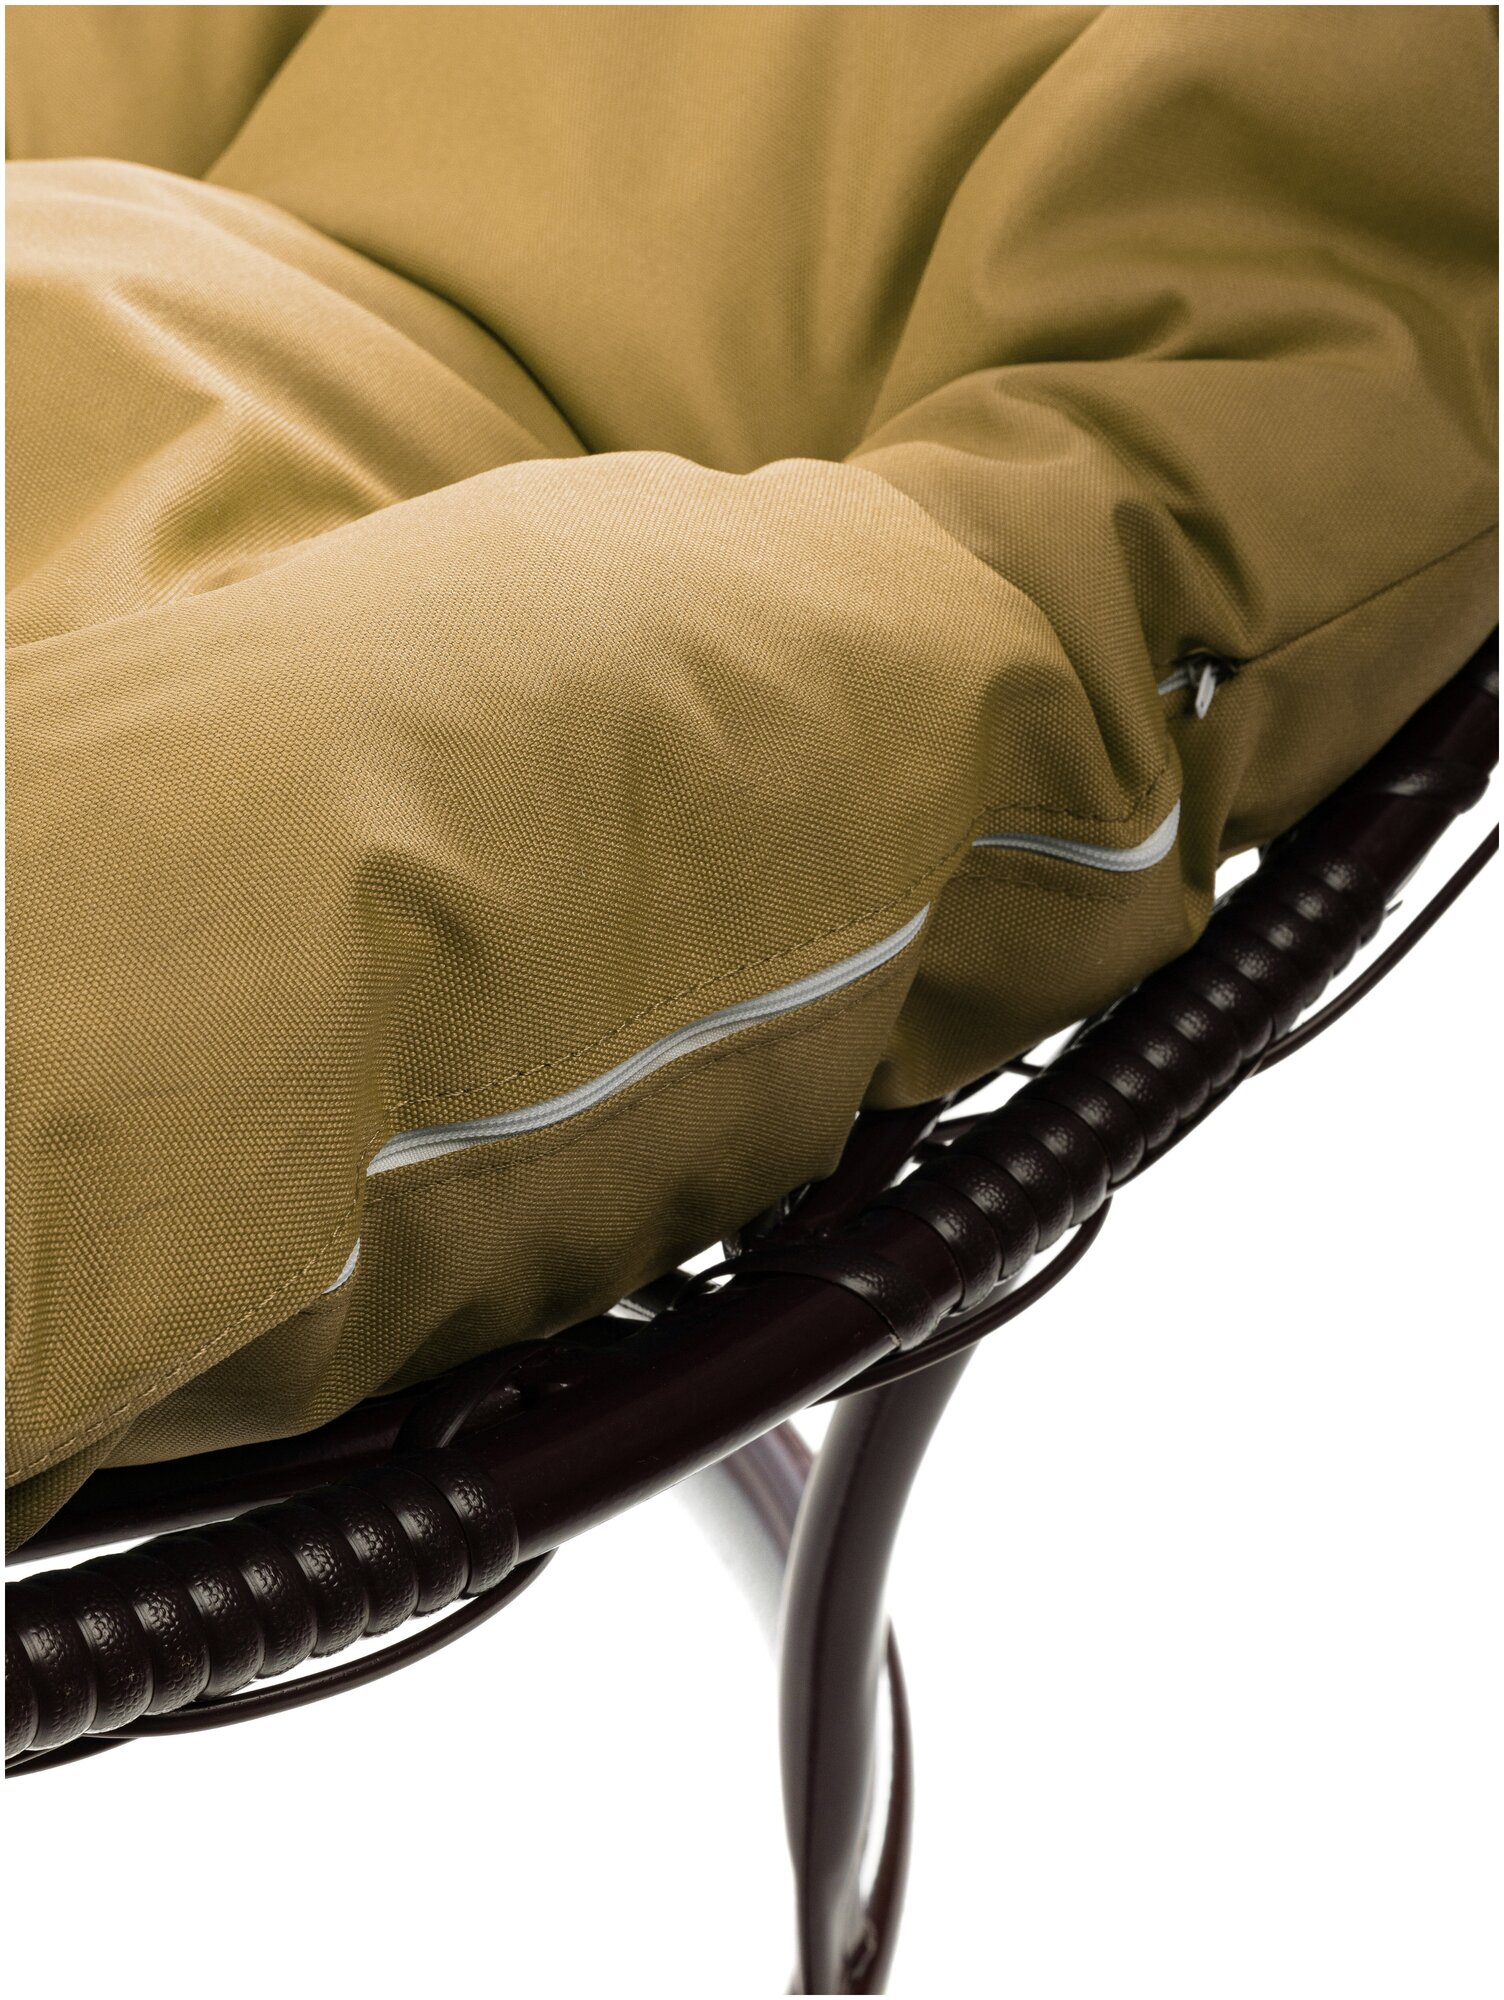 Кресло M-Group круг на подставке ротанг коричневое, бежевая подушка - фотография № 11